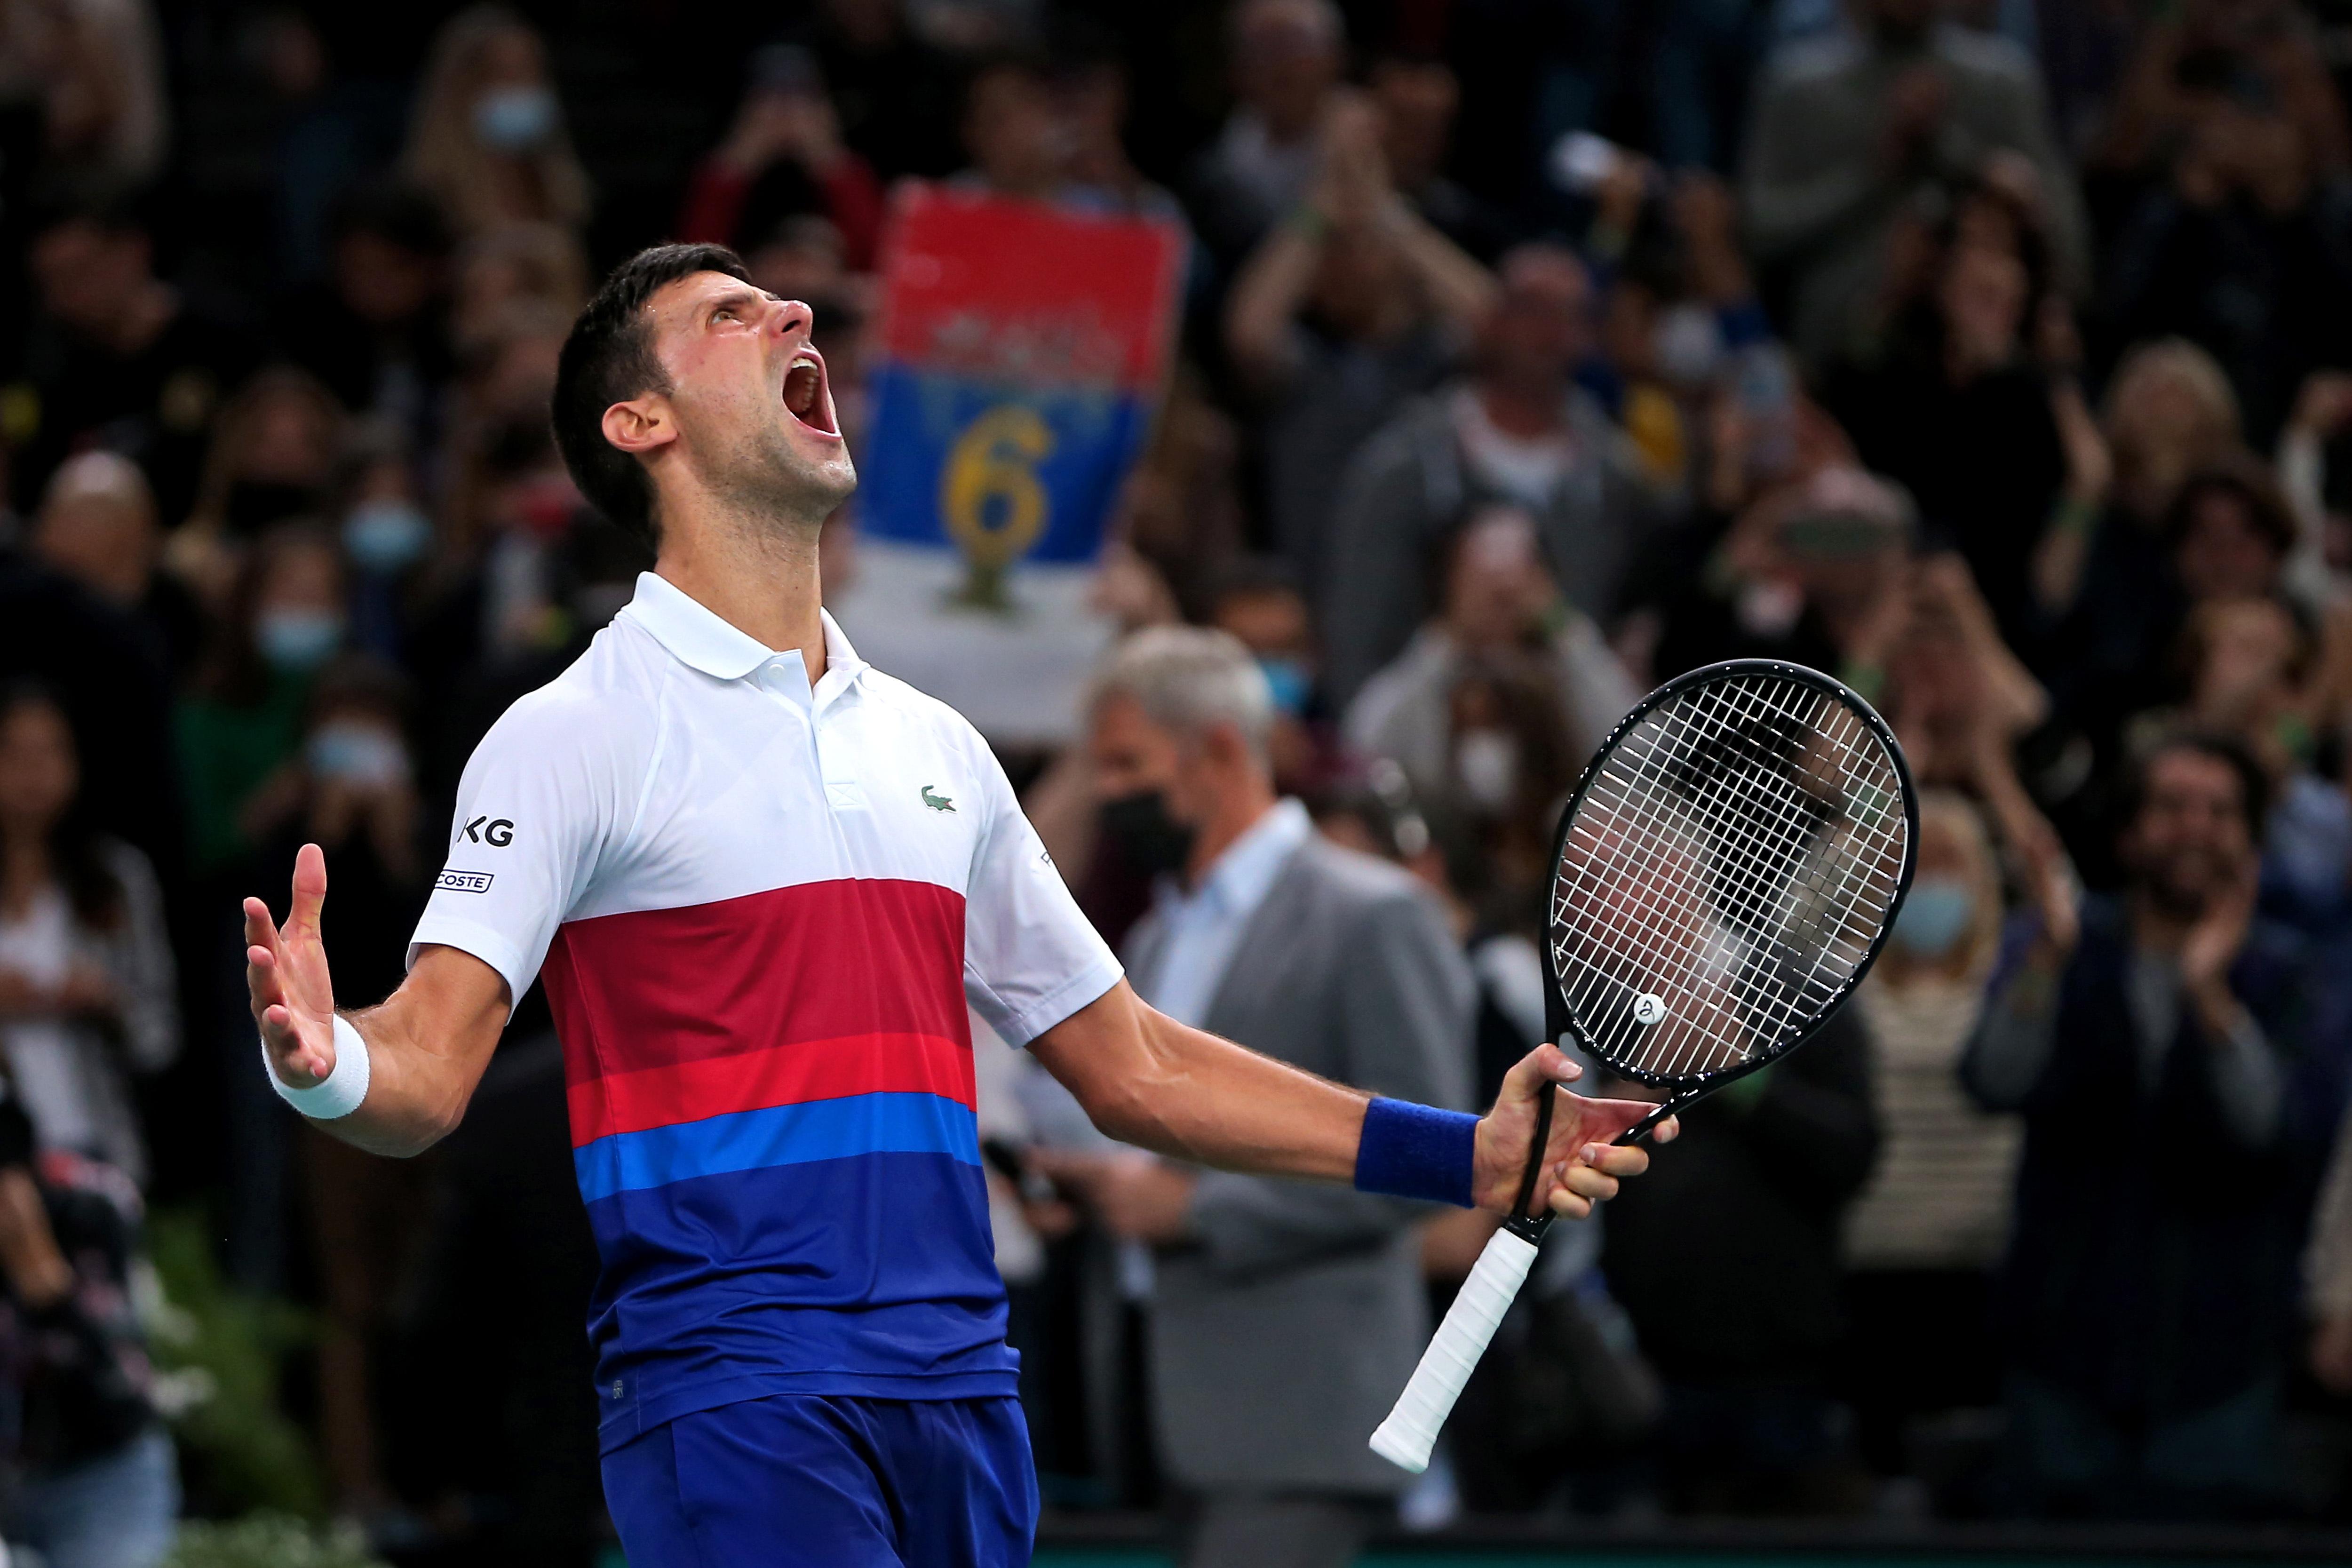 Rekord: Djokovic beendet das Jahr zum 7. Mal als Nummer eins